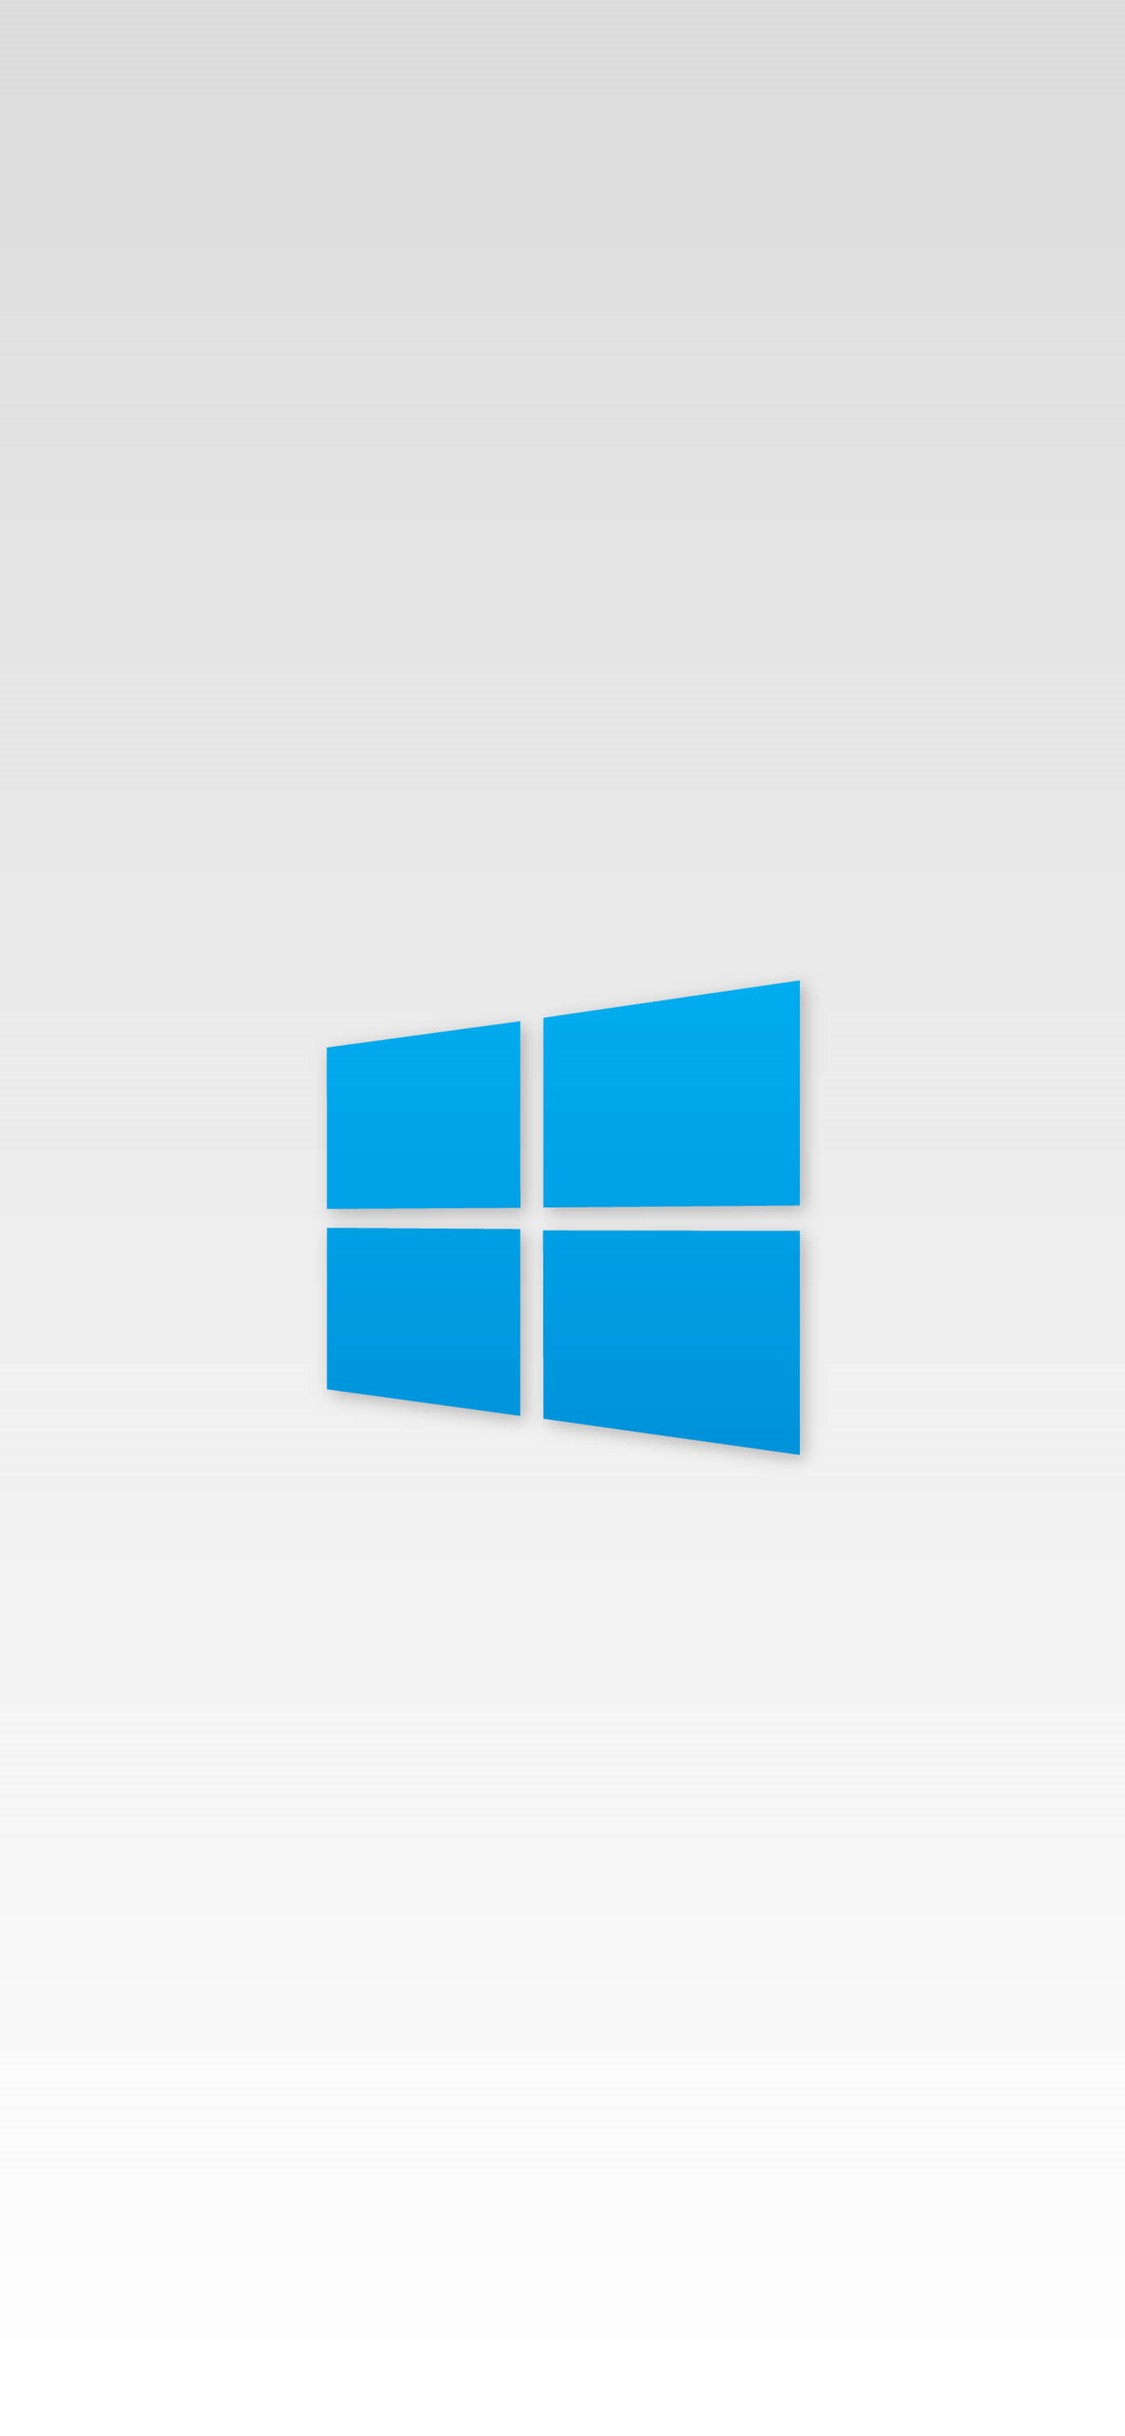 Simple Windows 10 by Hubz | Wallpapers | WallpaperHub